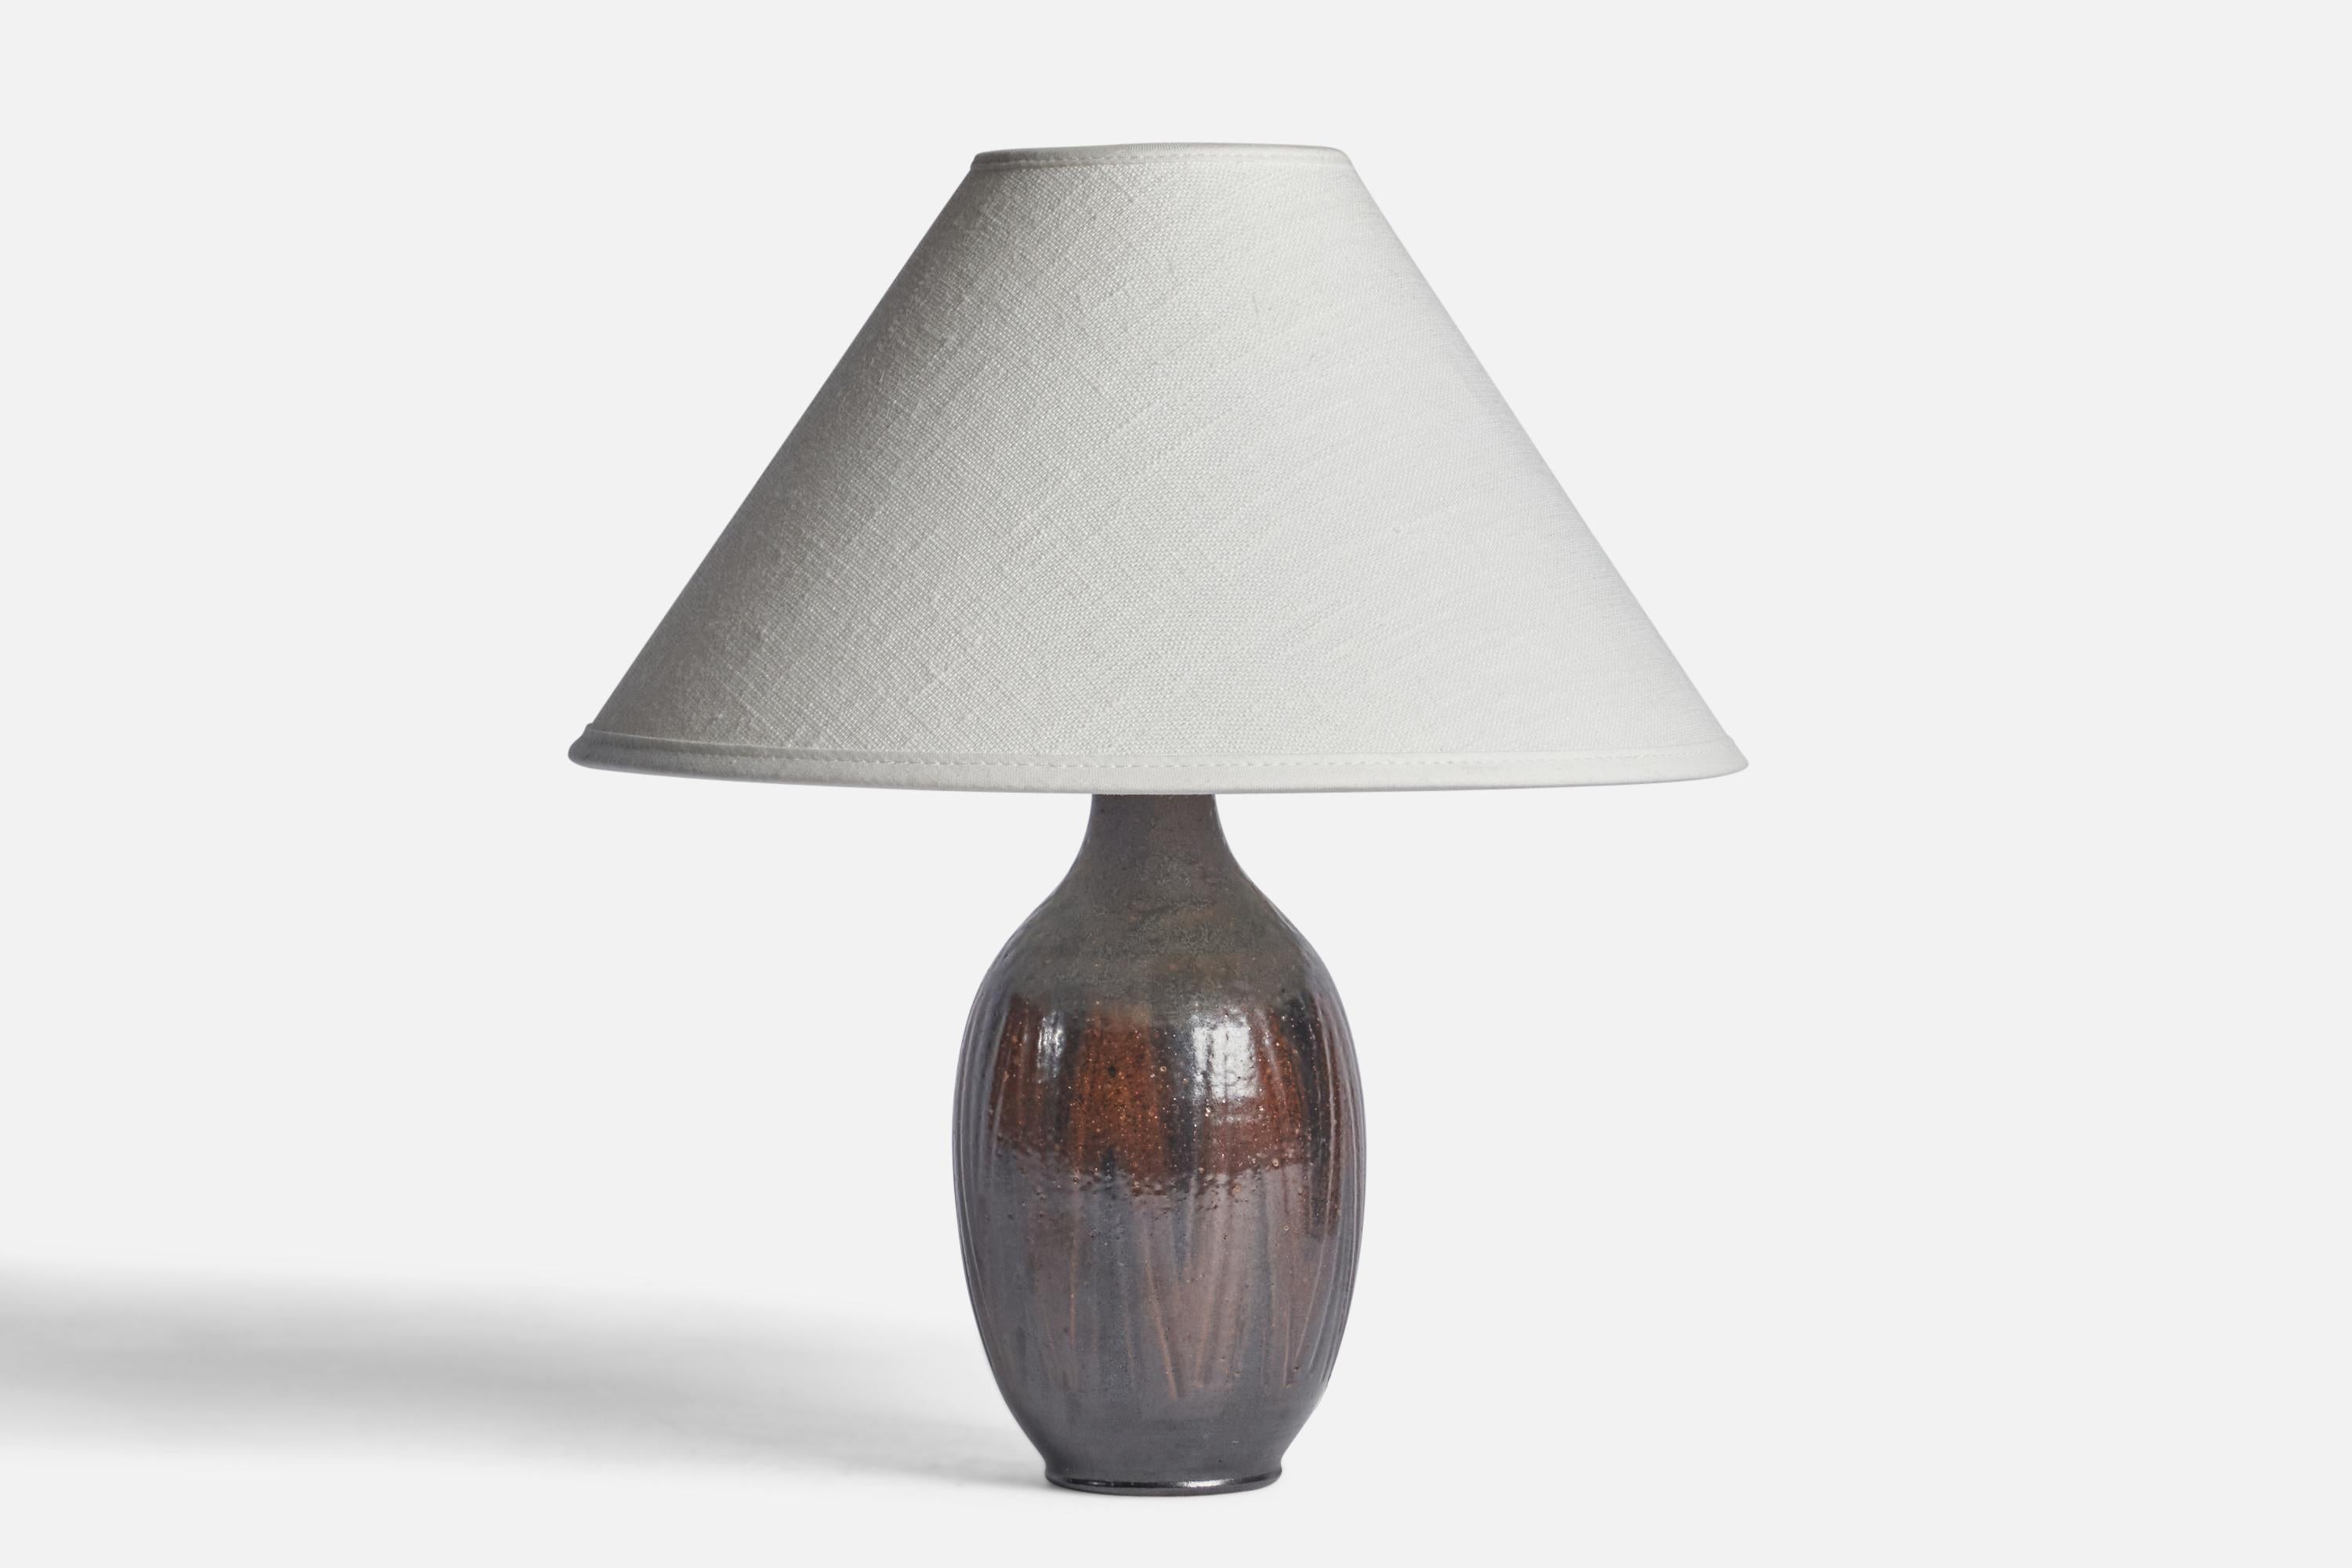 Lampe de table à glaçure brune et noire conçue et produite par Wallåkra, Suède, c. années 1960.

Dimensions de la lampe (pouces) : 8.25